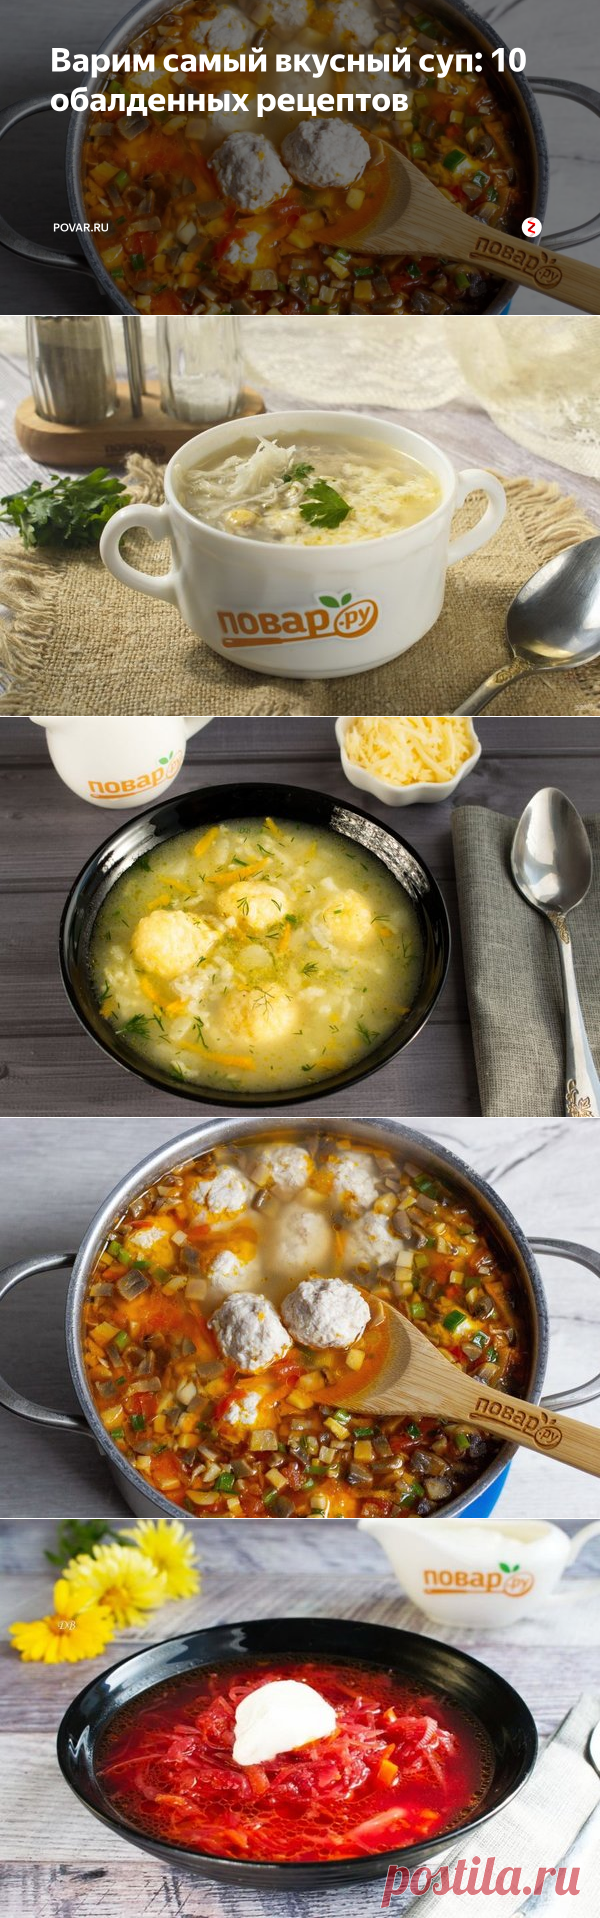 Варим самый вкусный суп: 10 обалденных рецептов | POVAR.RU | Яндекс Дзен